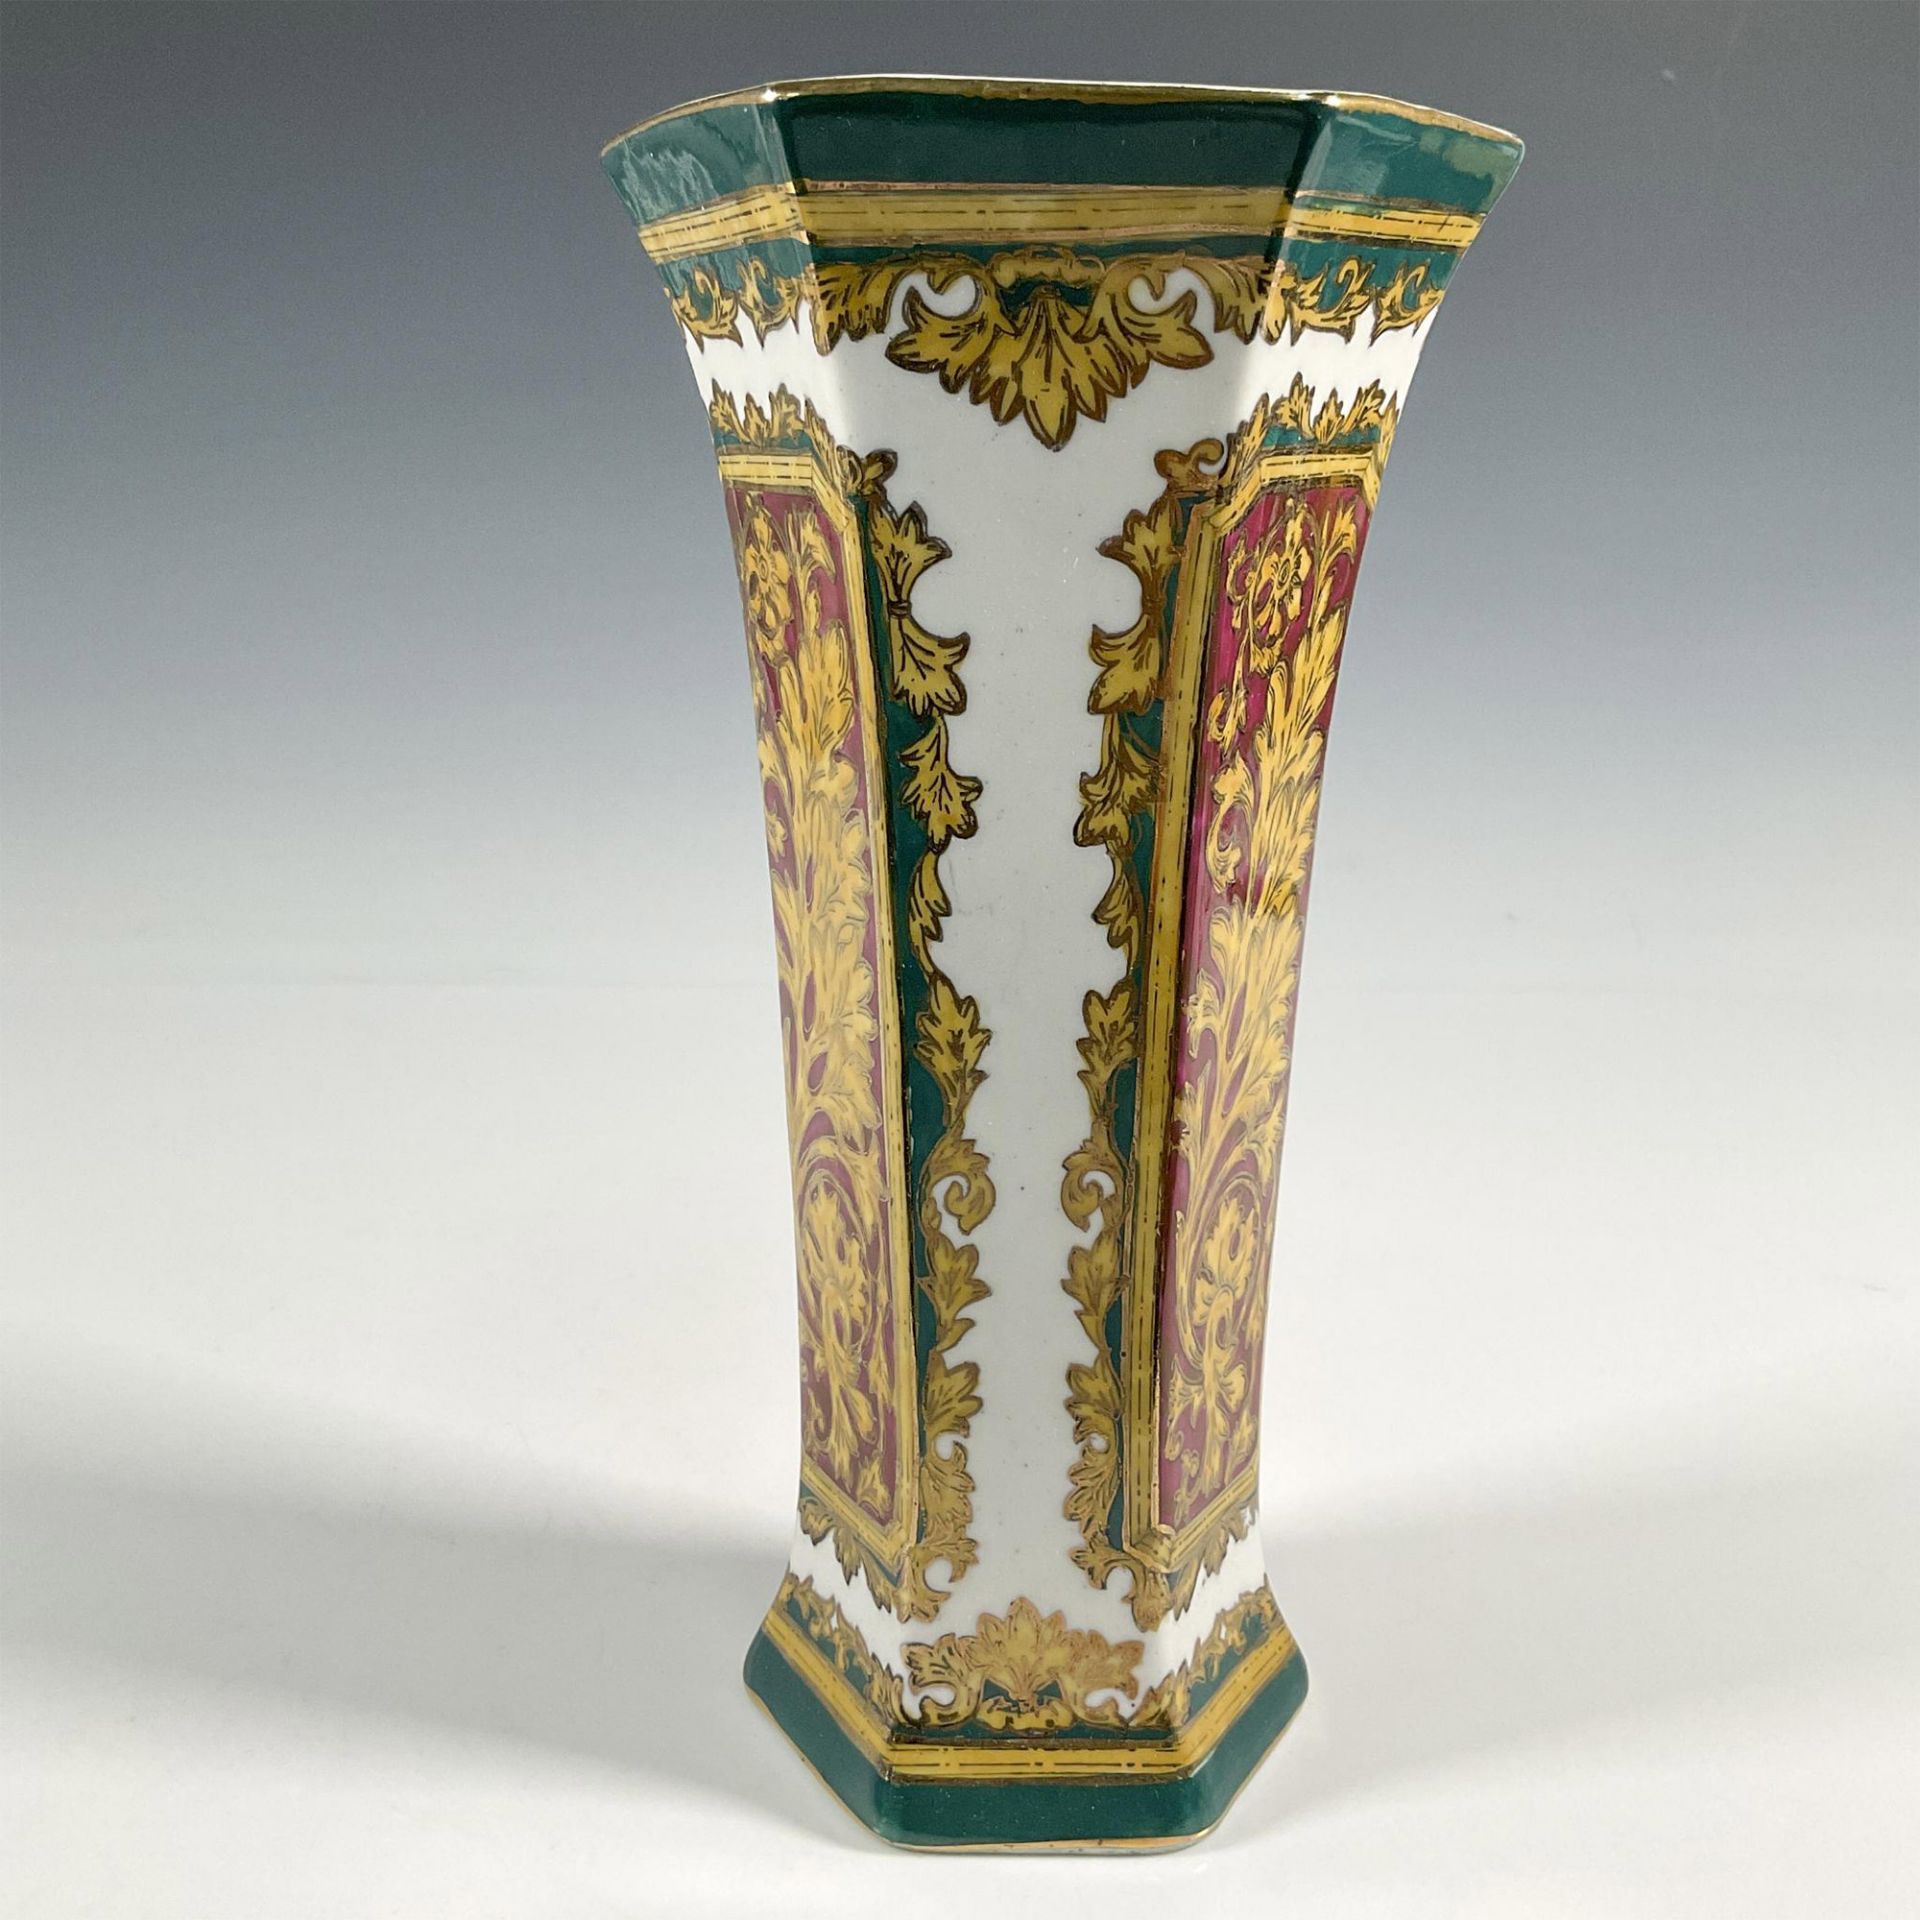 Andrea by Sadek Porcelain Hexagonal Vase - Image 2 of 3